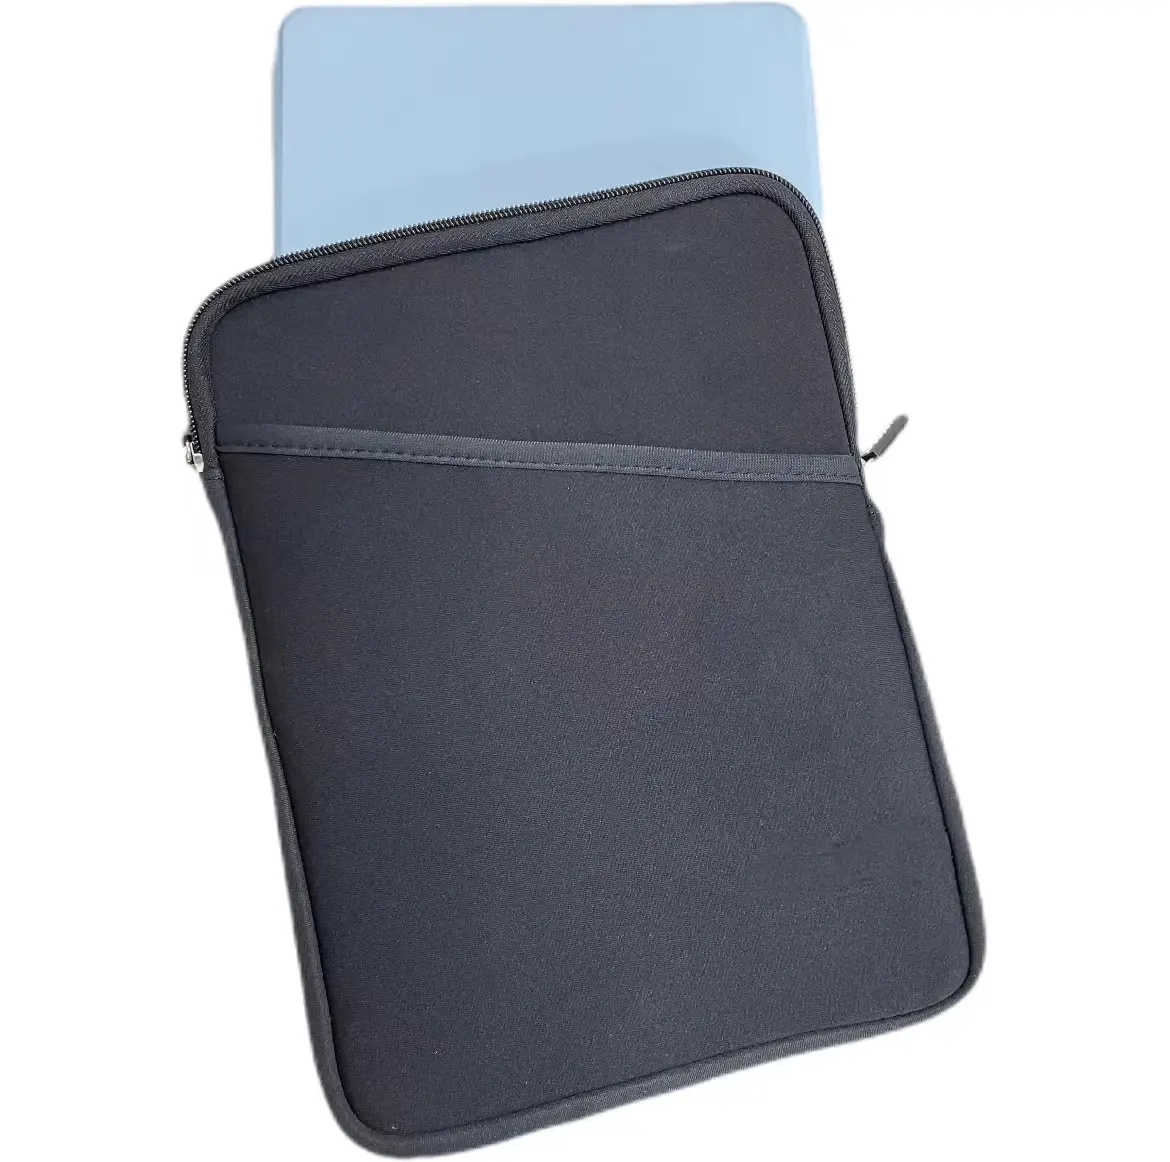 Sacs et housses pour ordinateur portable portables multifonctionnels légers sac de rangement pour clavier d'ordinateur portable étui de protection pour tablette